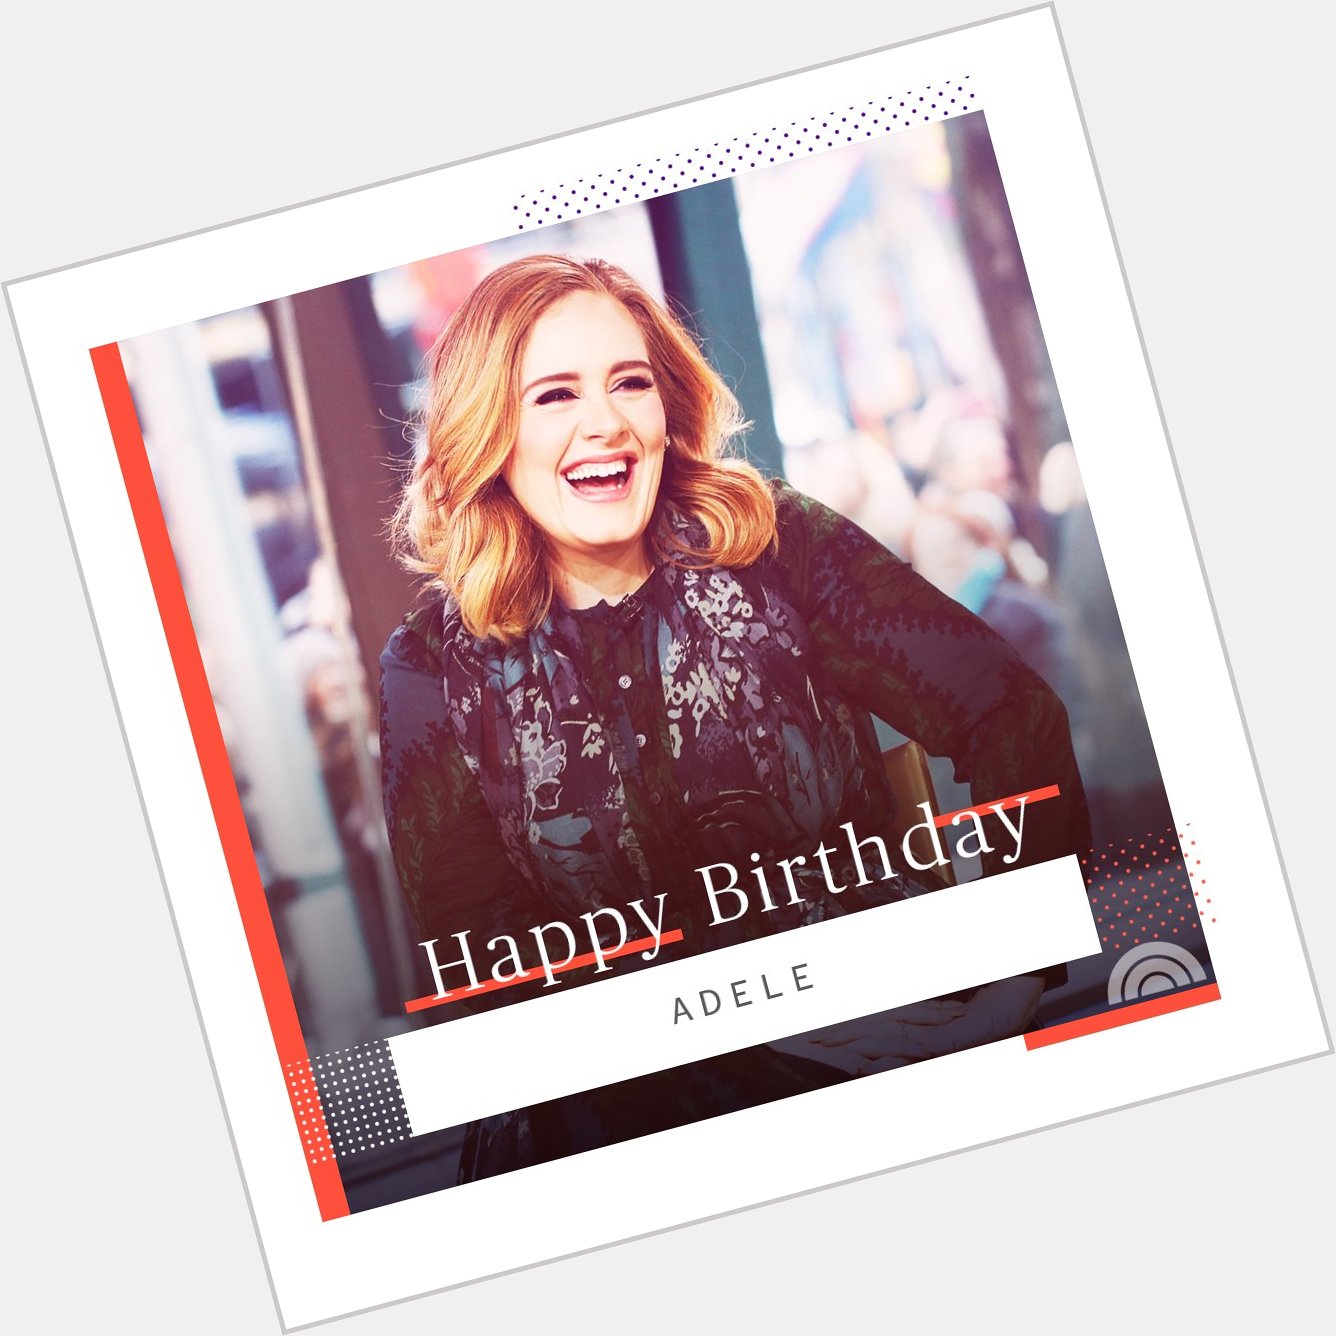 Happy birthday, Adele!  